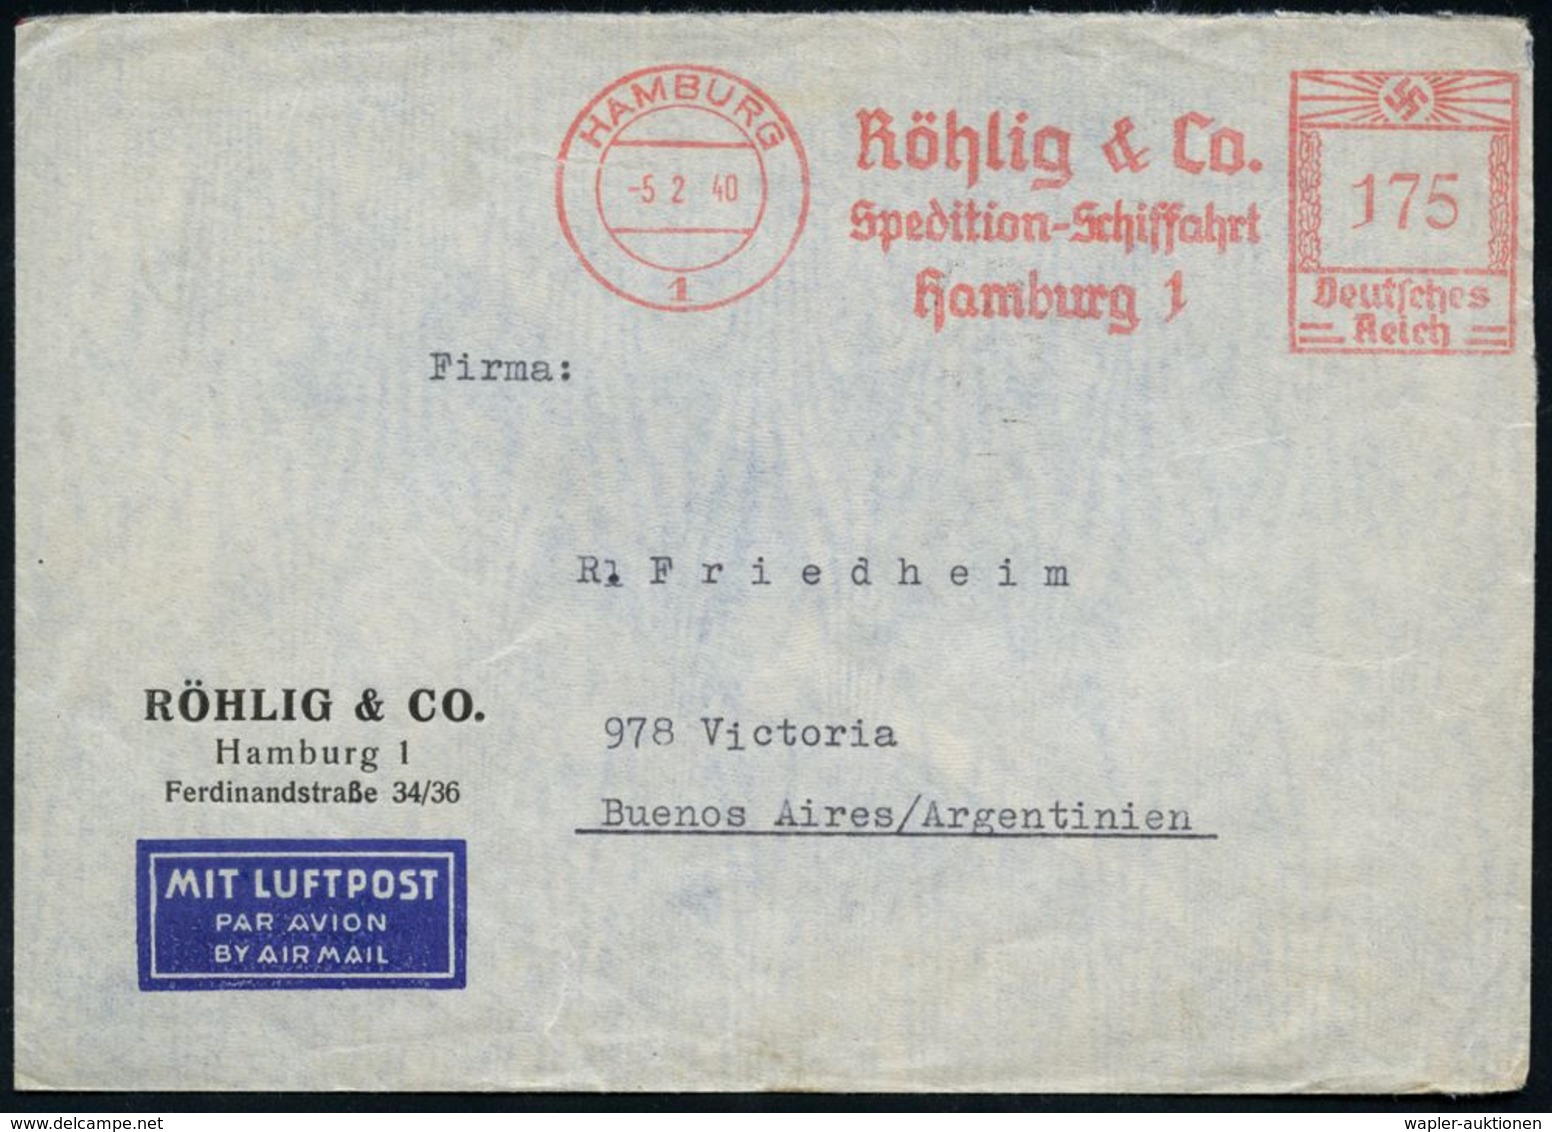 HAMBURG/ 1/ Röhlig & Co/ Spedition-Schiffahrt 1940 (5.2.) AFS 175 Pf. + Rs. Zensur-Streifen "Geöffnet/OKW" (= Ffm., Rie. - Altri (Aria)